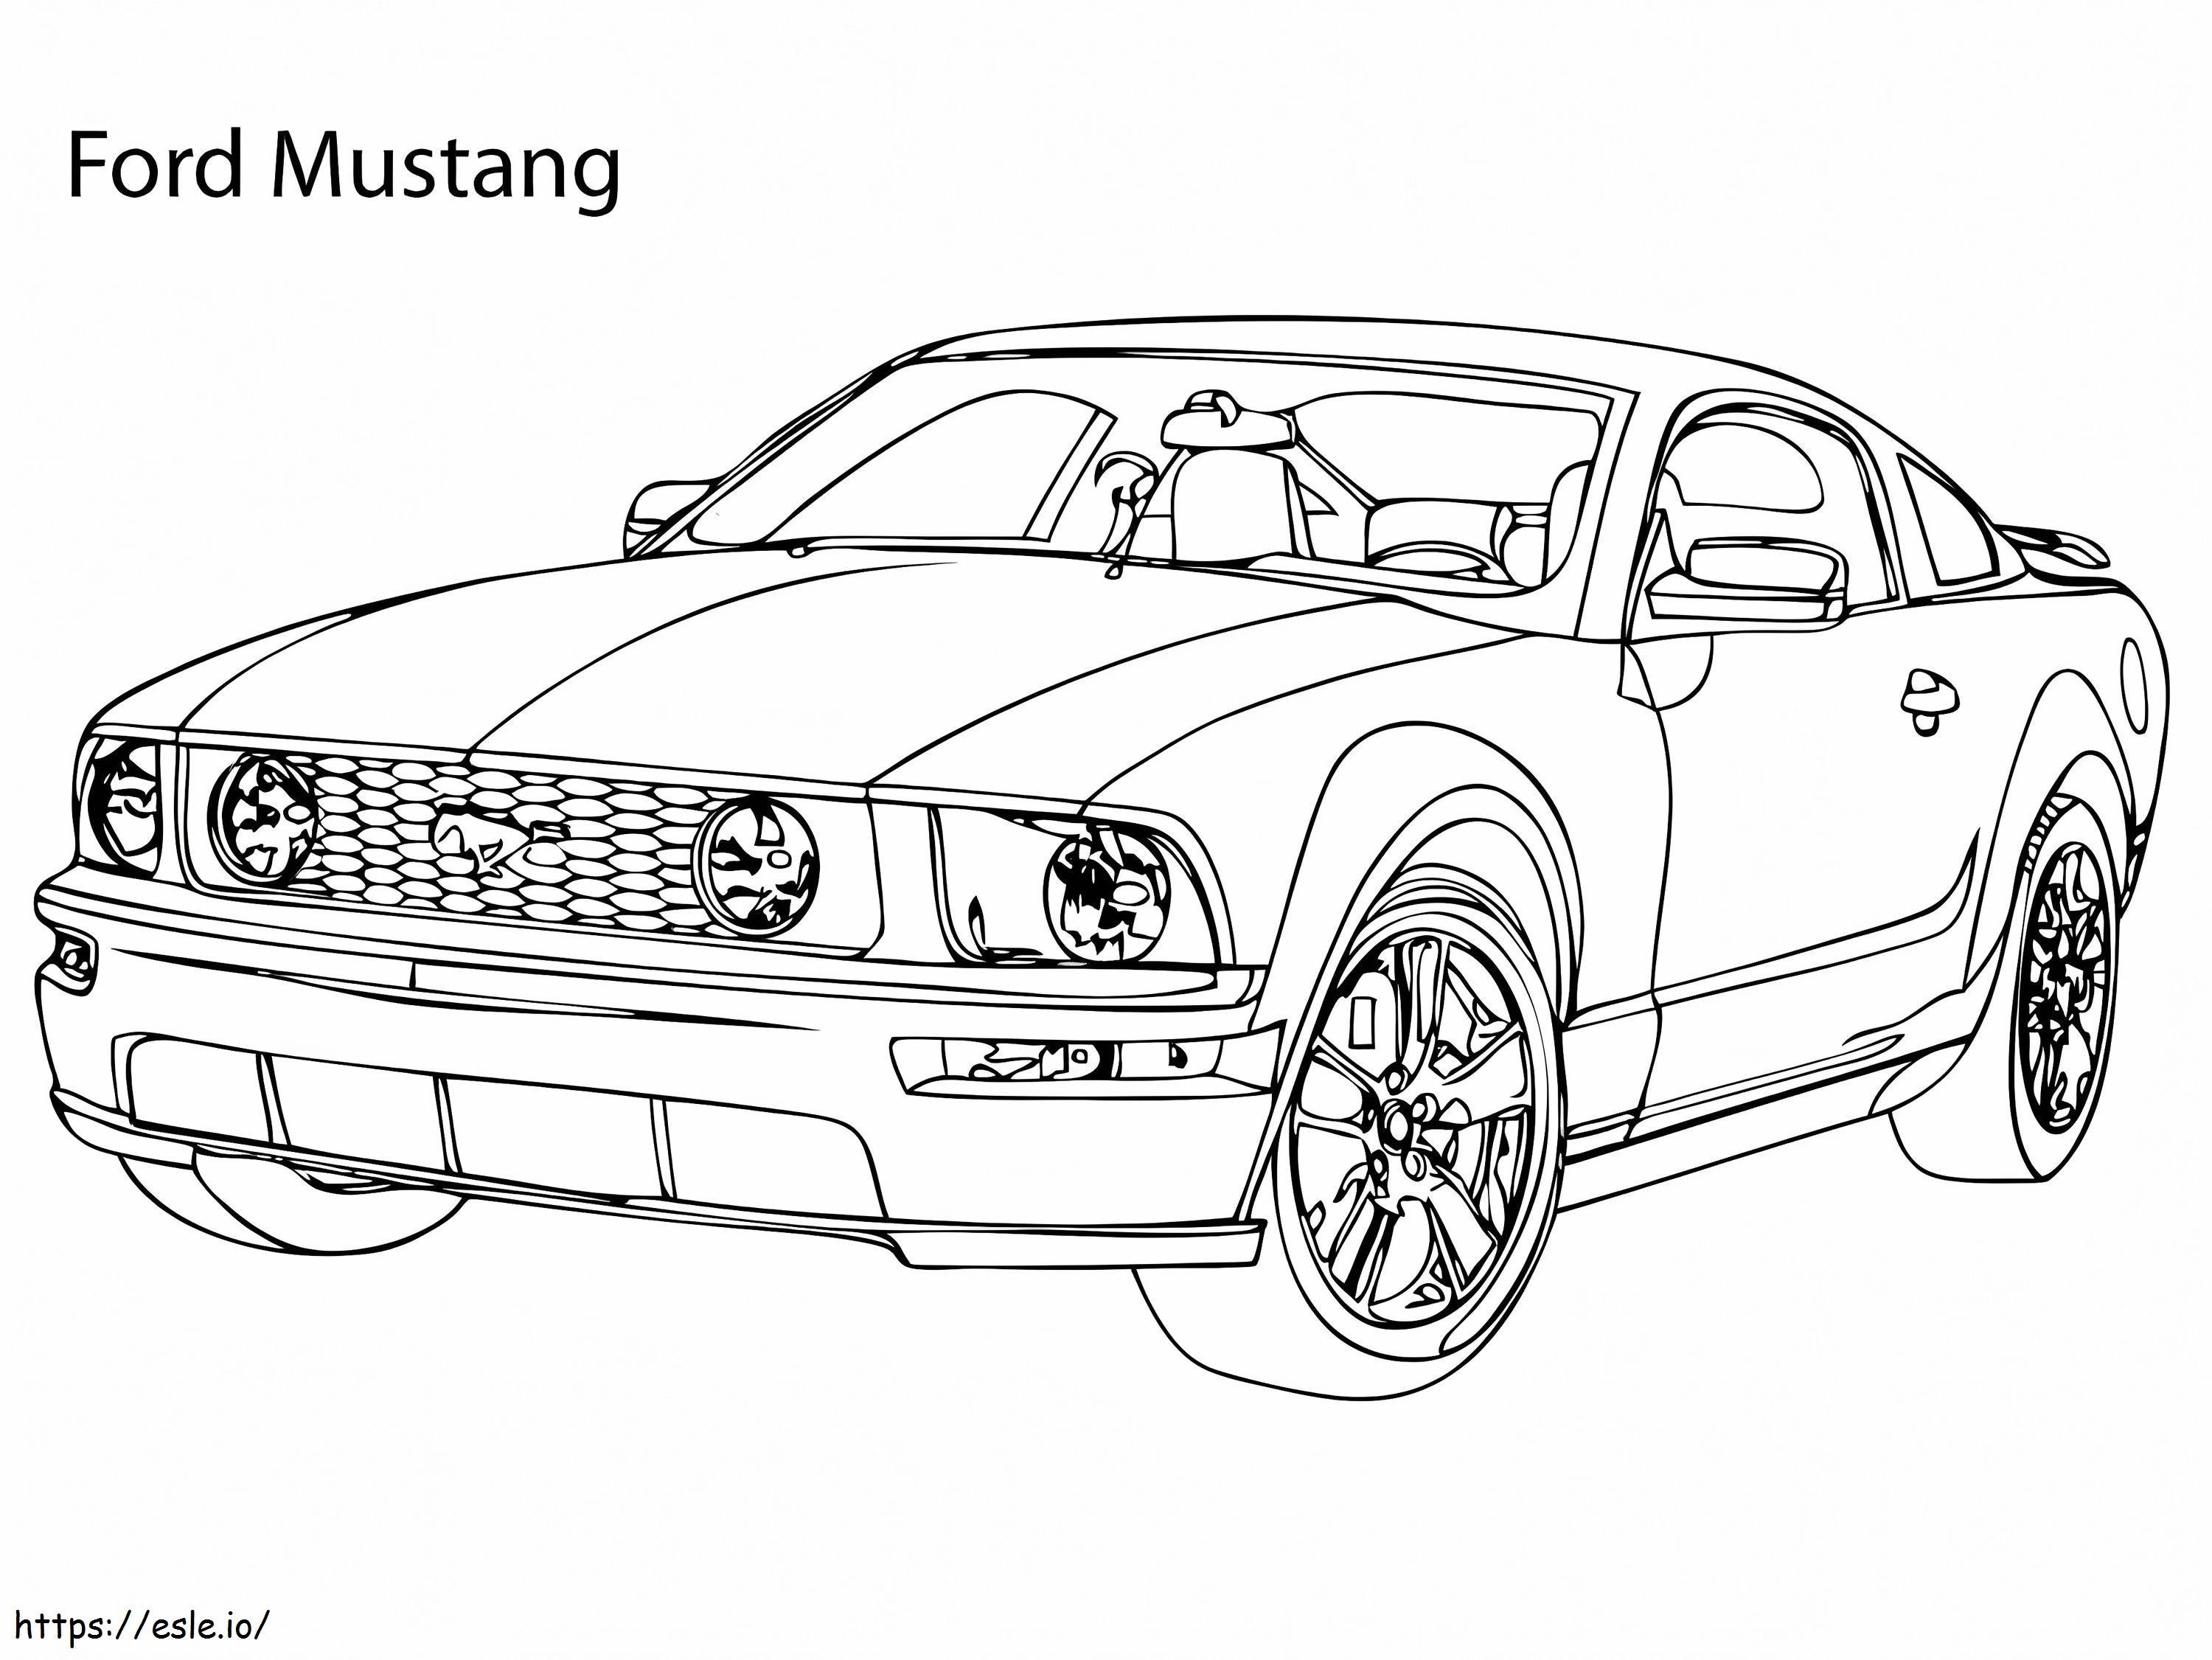 Súper Coche Ford Mustang para colorear